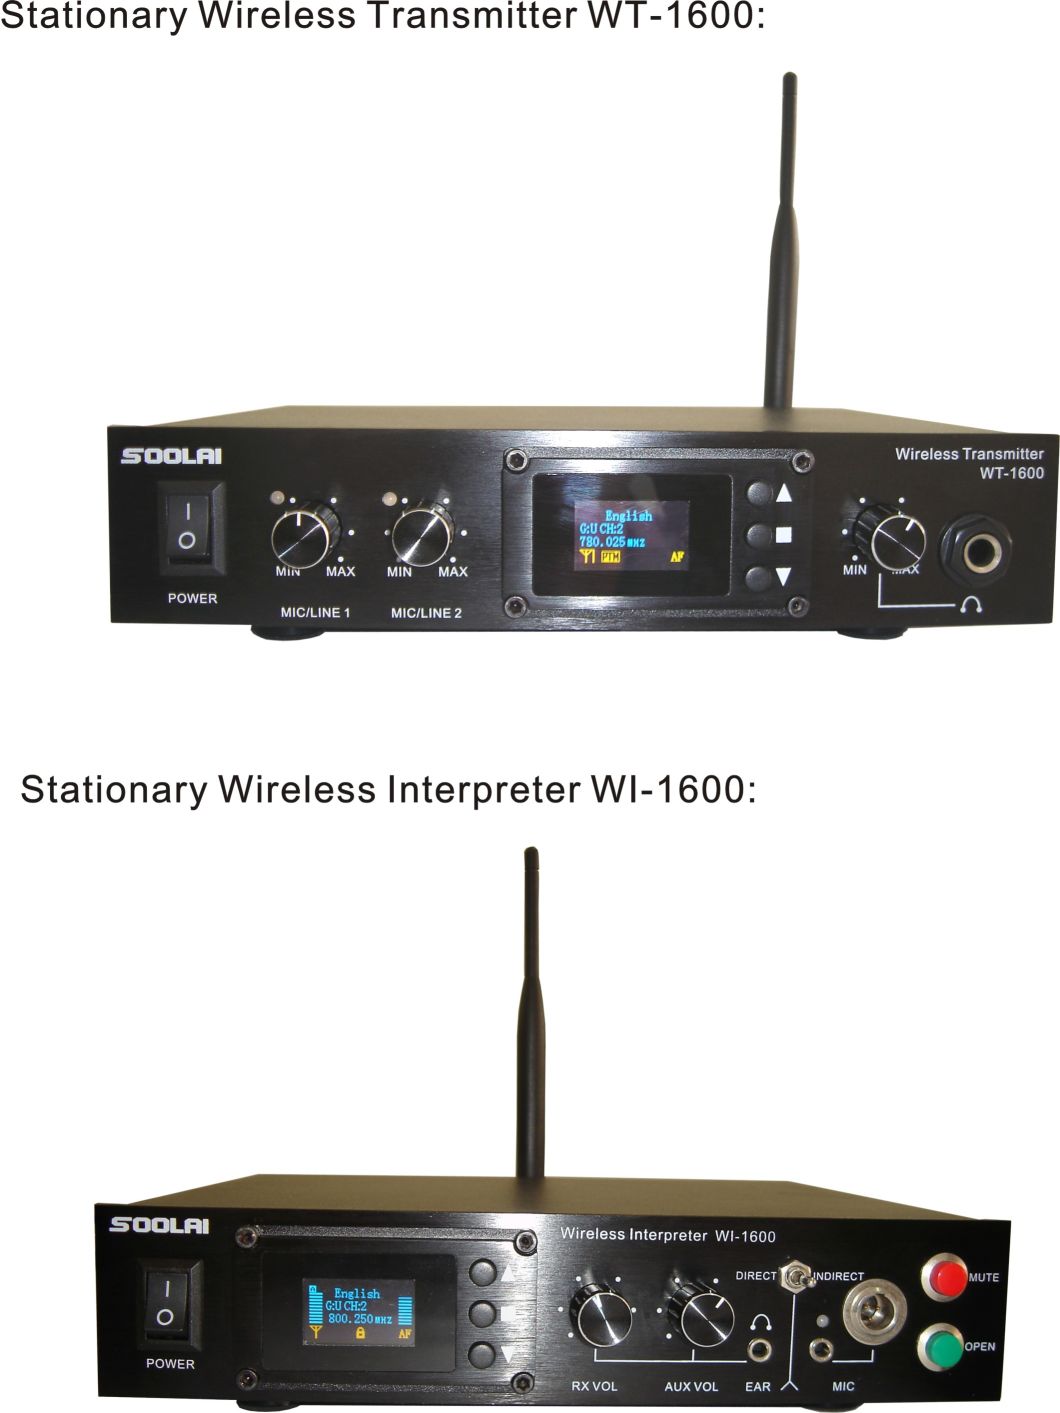 UHF Communication System Spl-1600